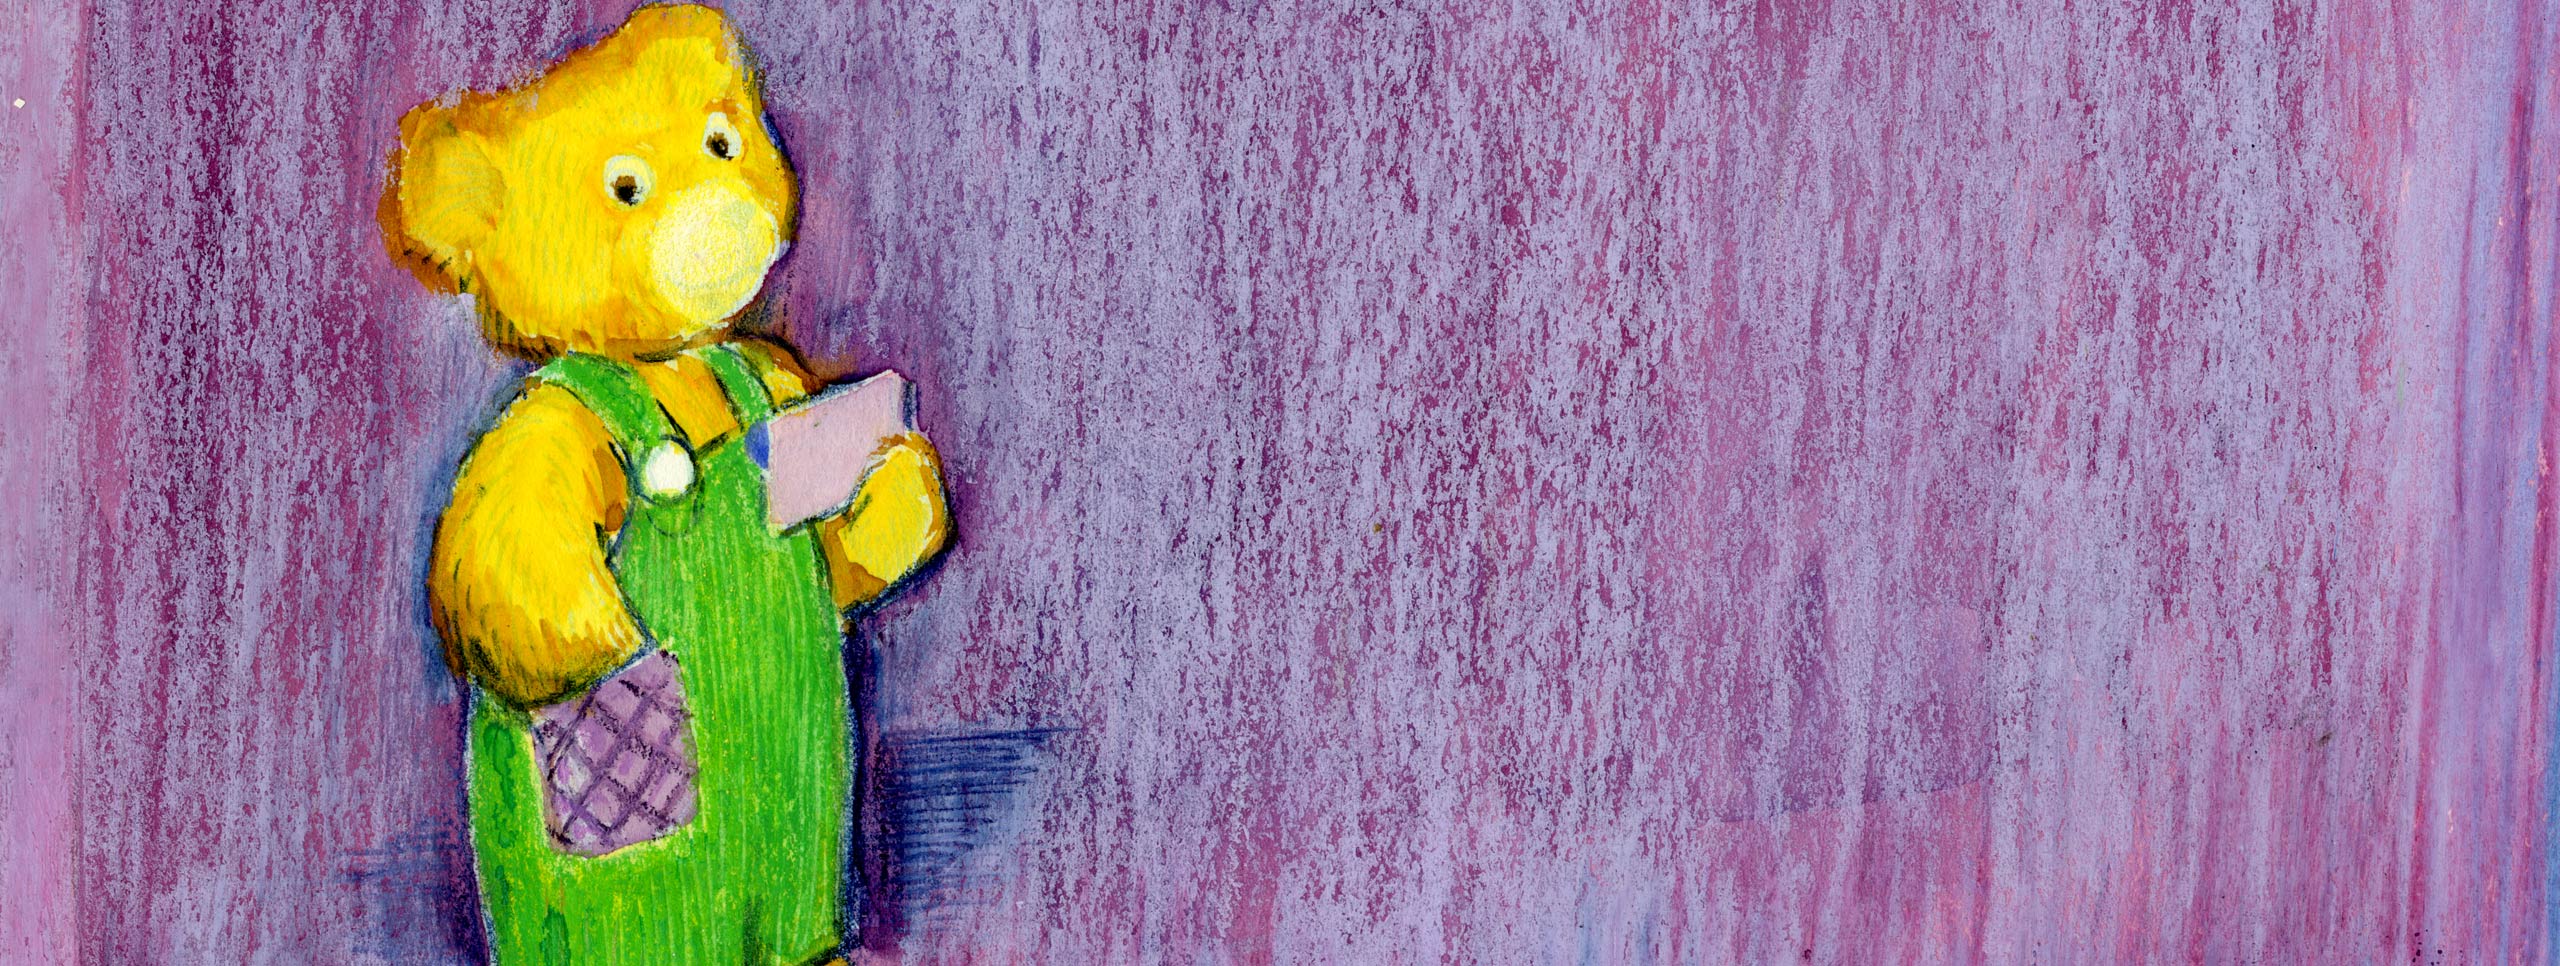 Telón de fondo púrpura con un oso de peluche dorado. El oso lleva un mono verde con un bolsillo morado y una tarjeta de notas